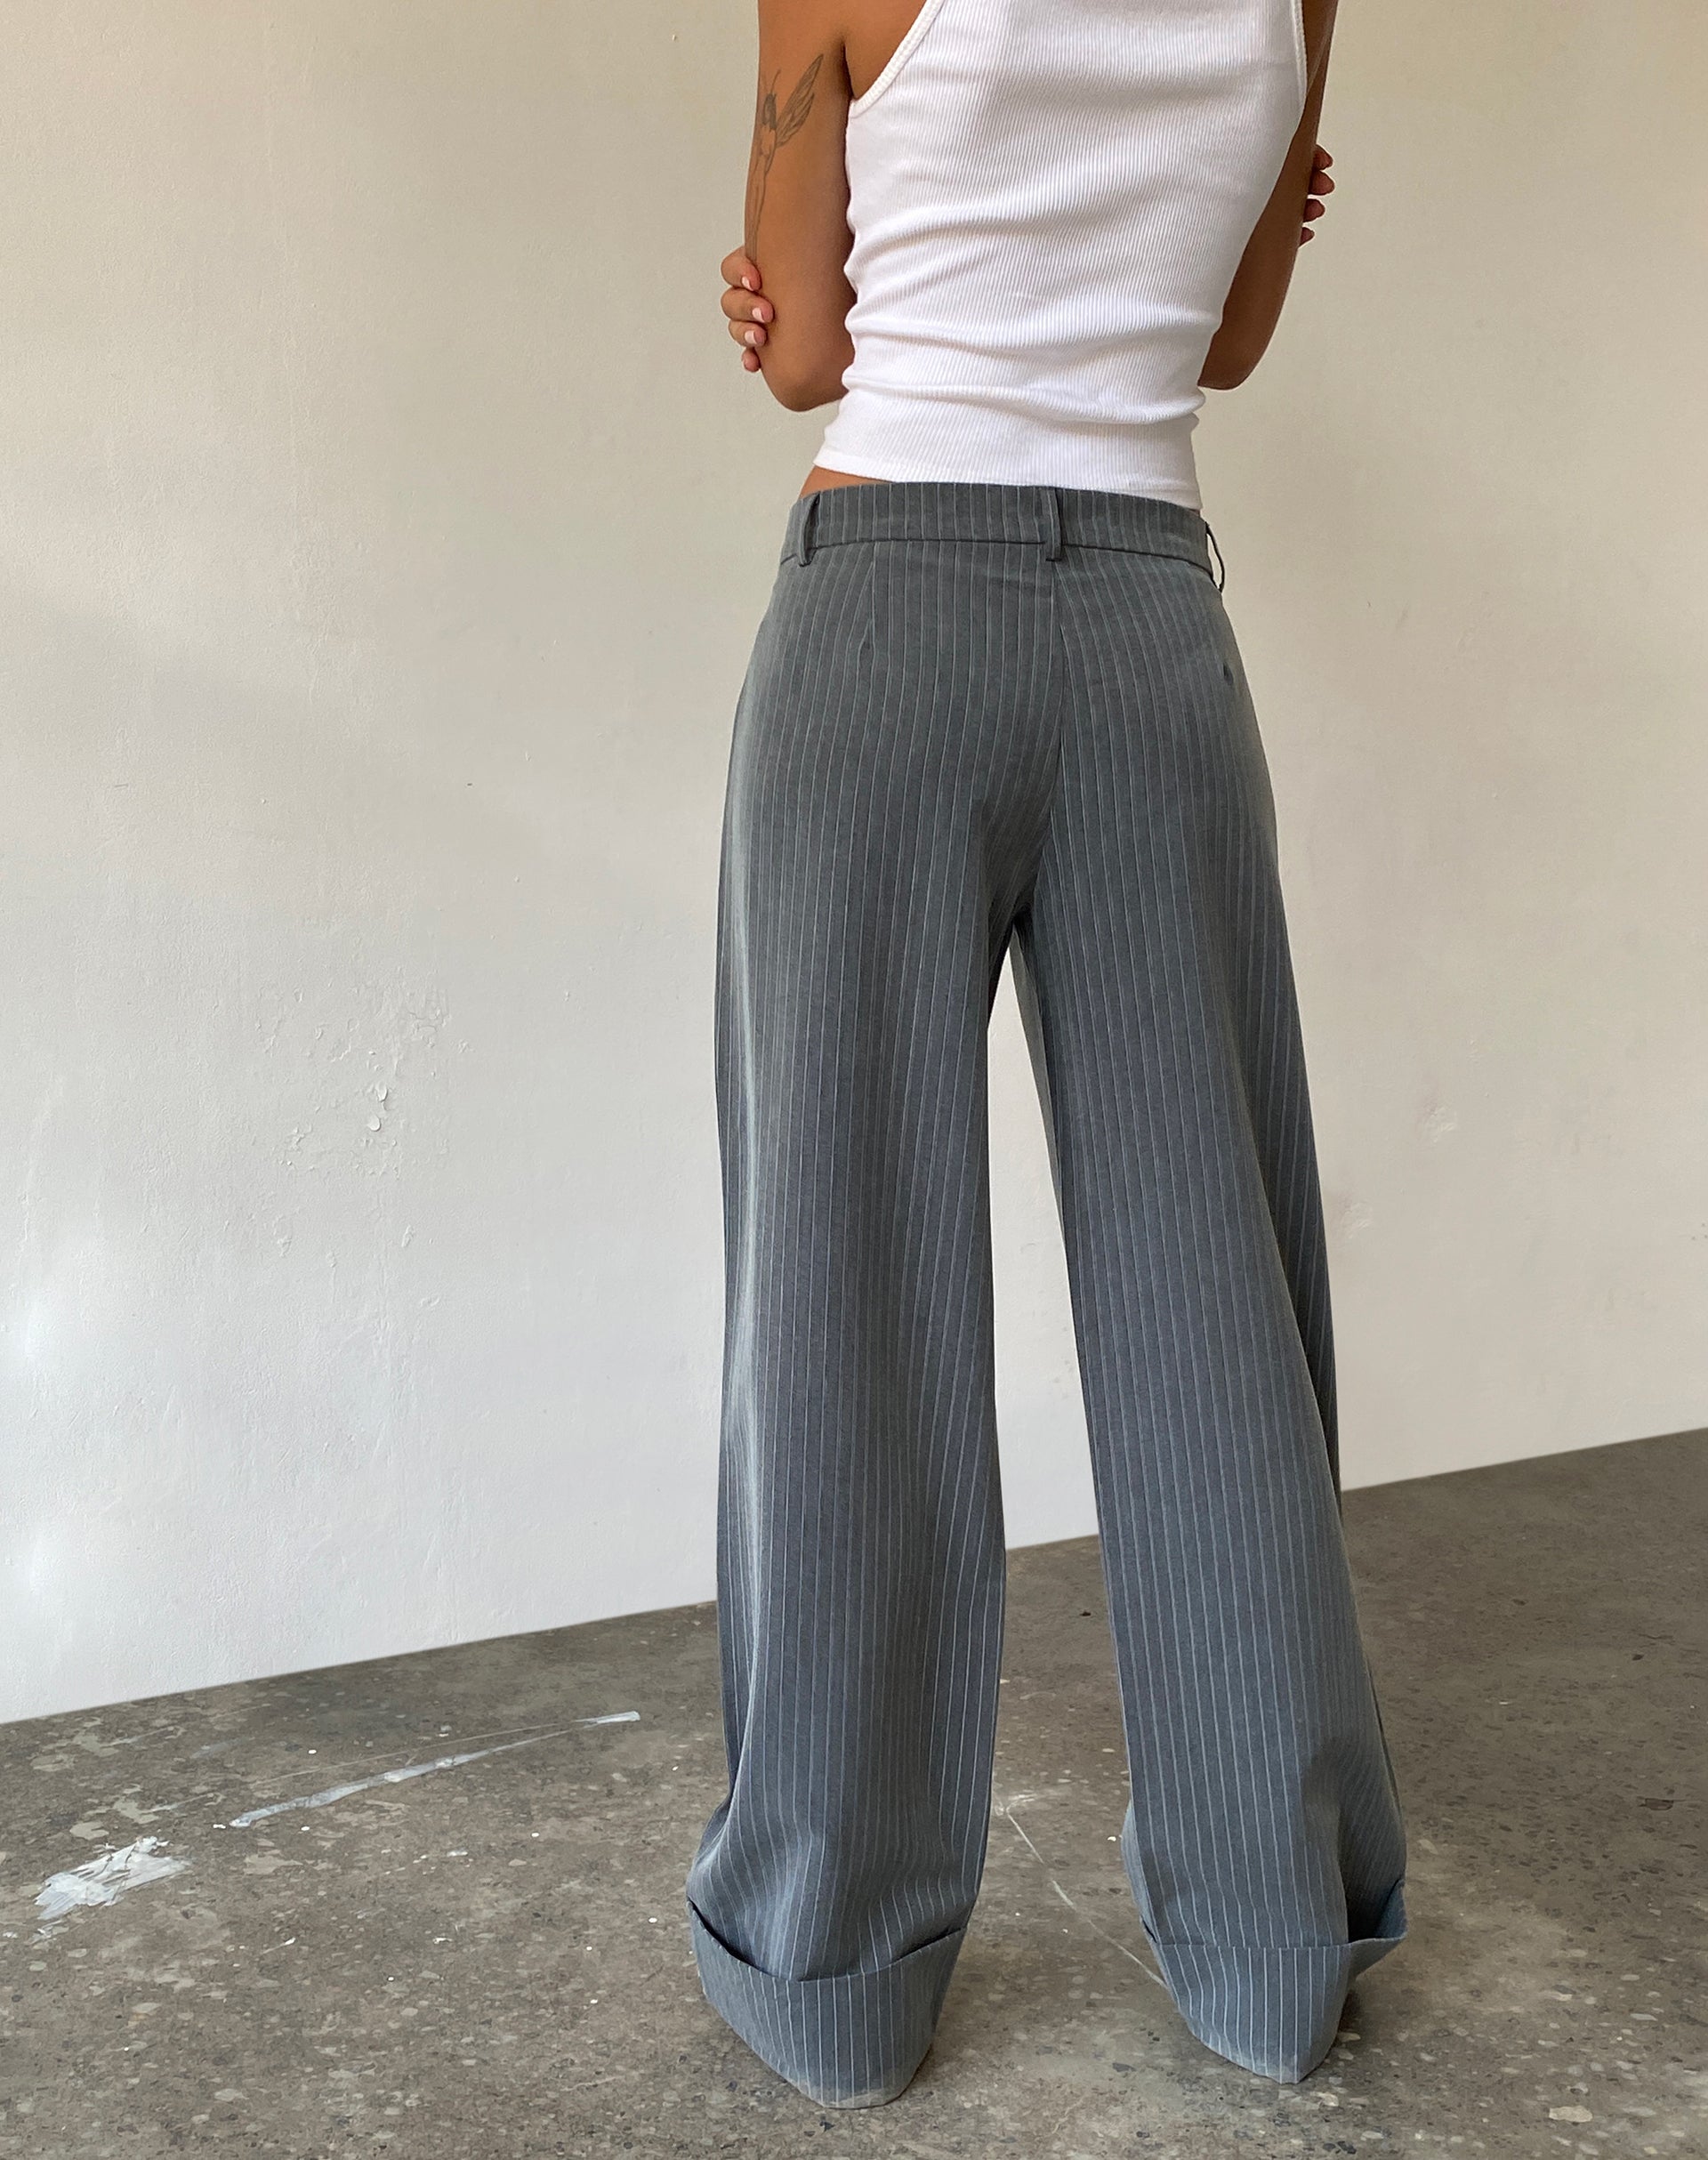 Imagen de Abba Low Rise Trouser in Pinstripe Grey